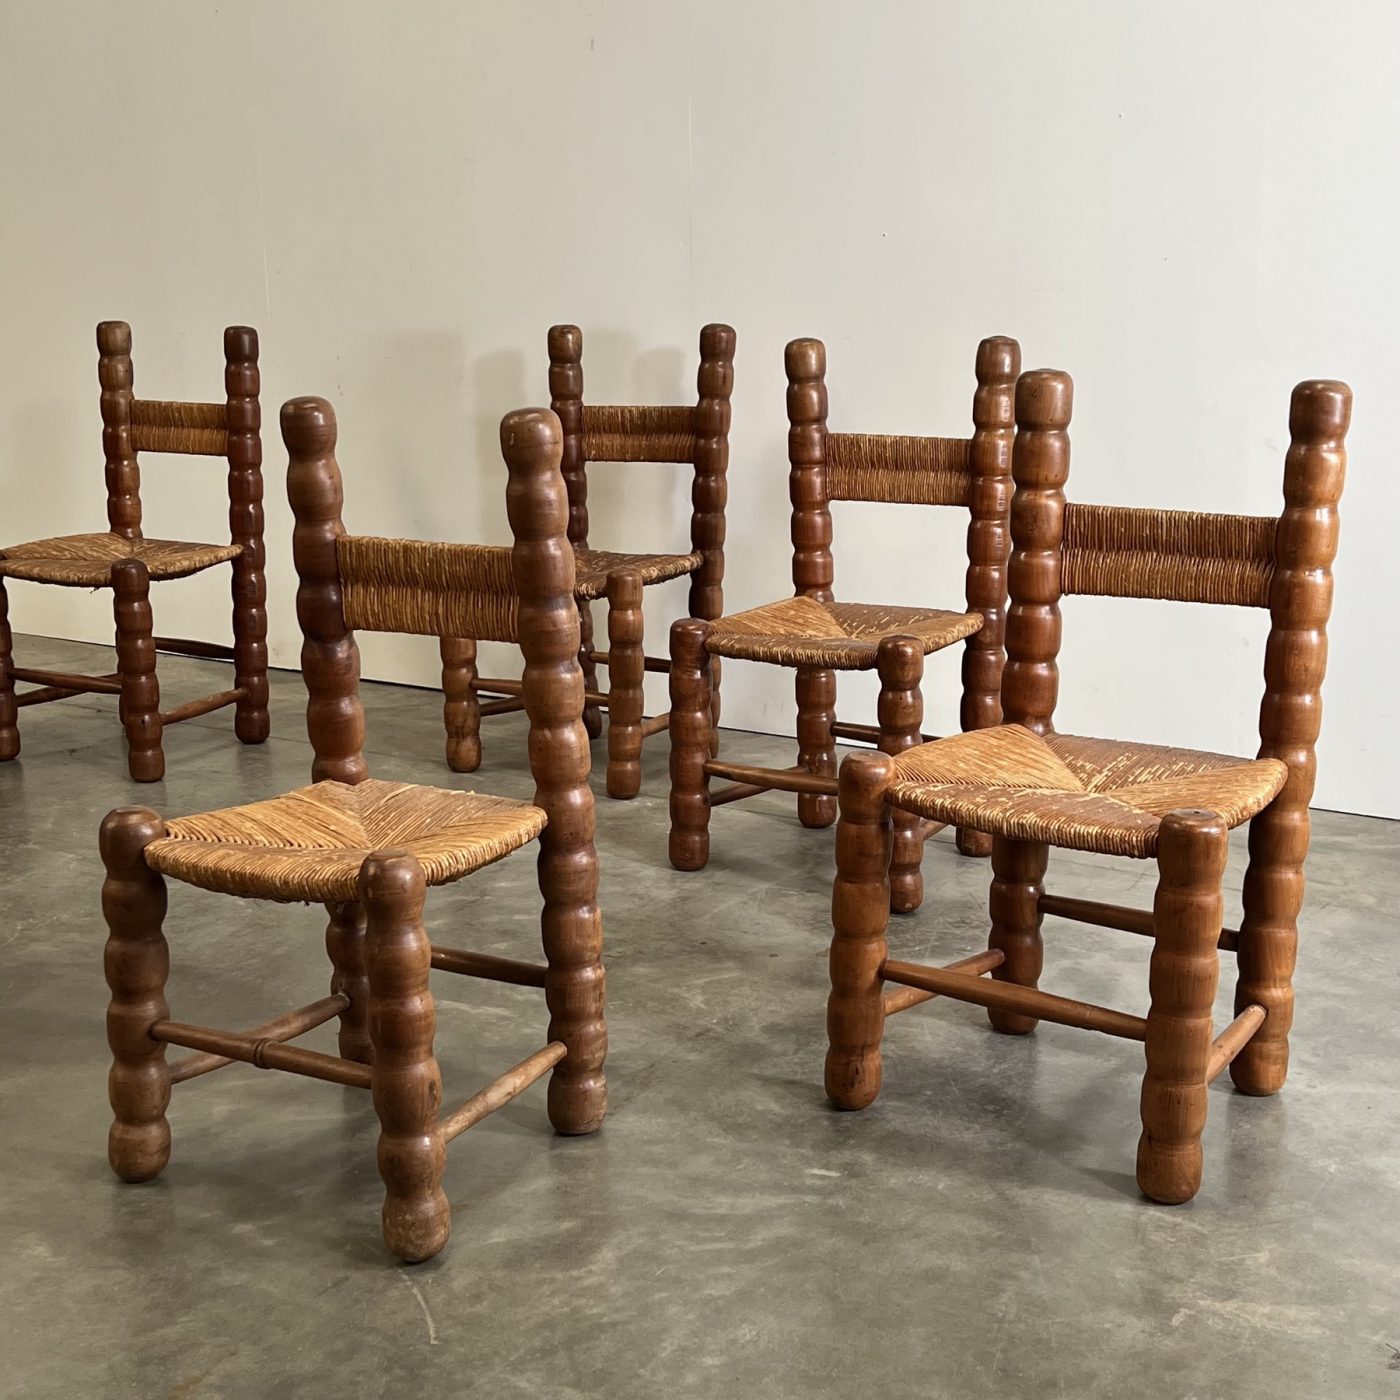 objet-vagabond-massive-chairs0006